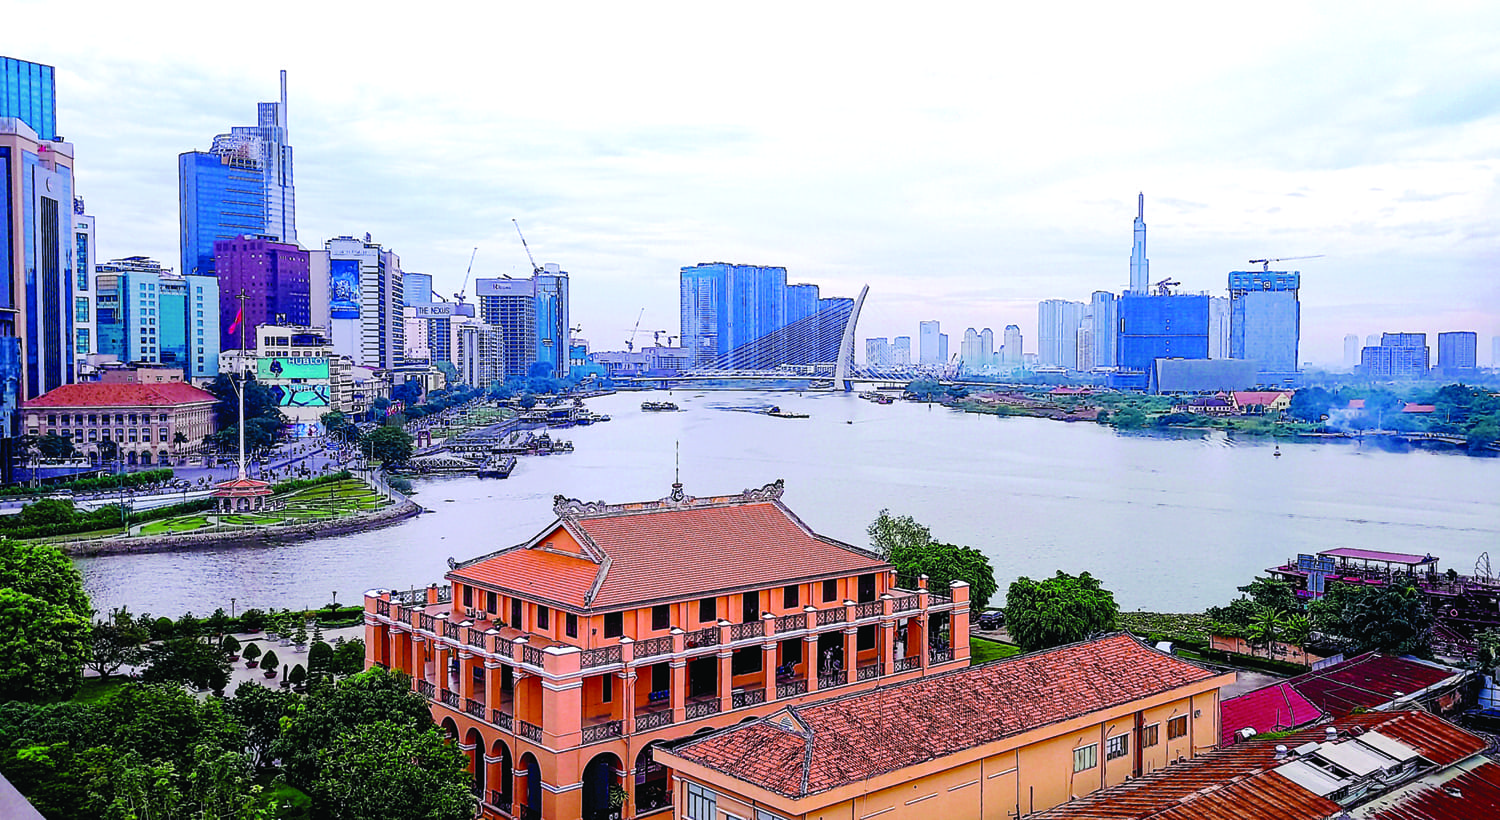 Đừng để việc xây cầu trên sông Sài Gòn sẽ cản đường phát triển của TP.HCM